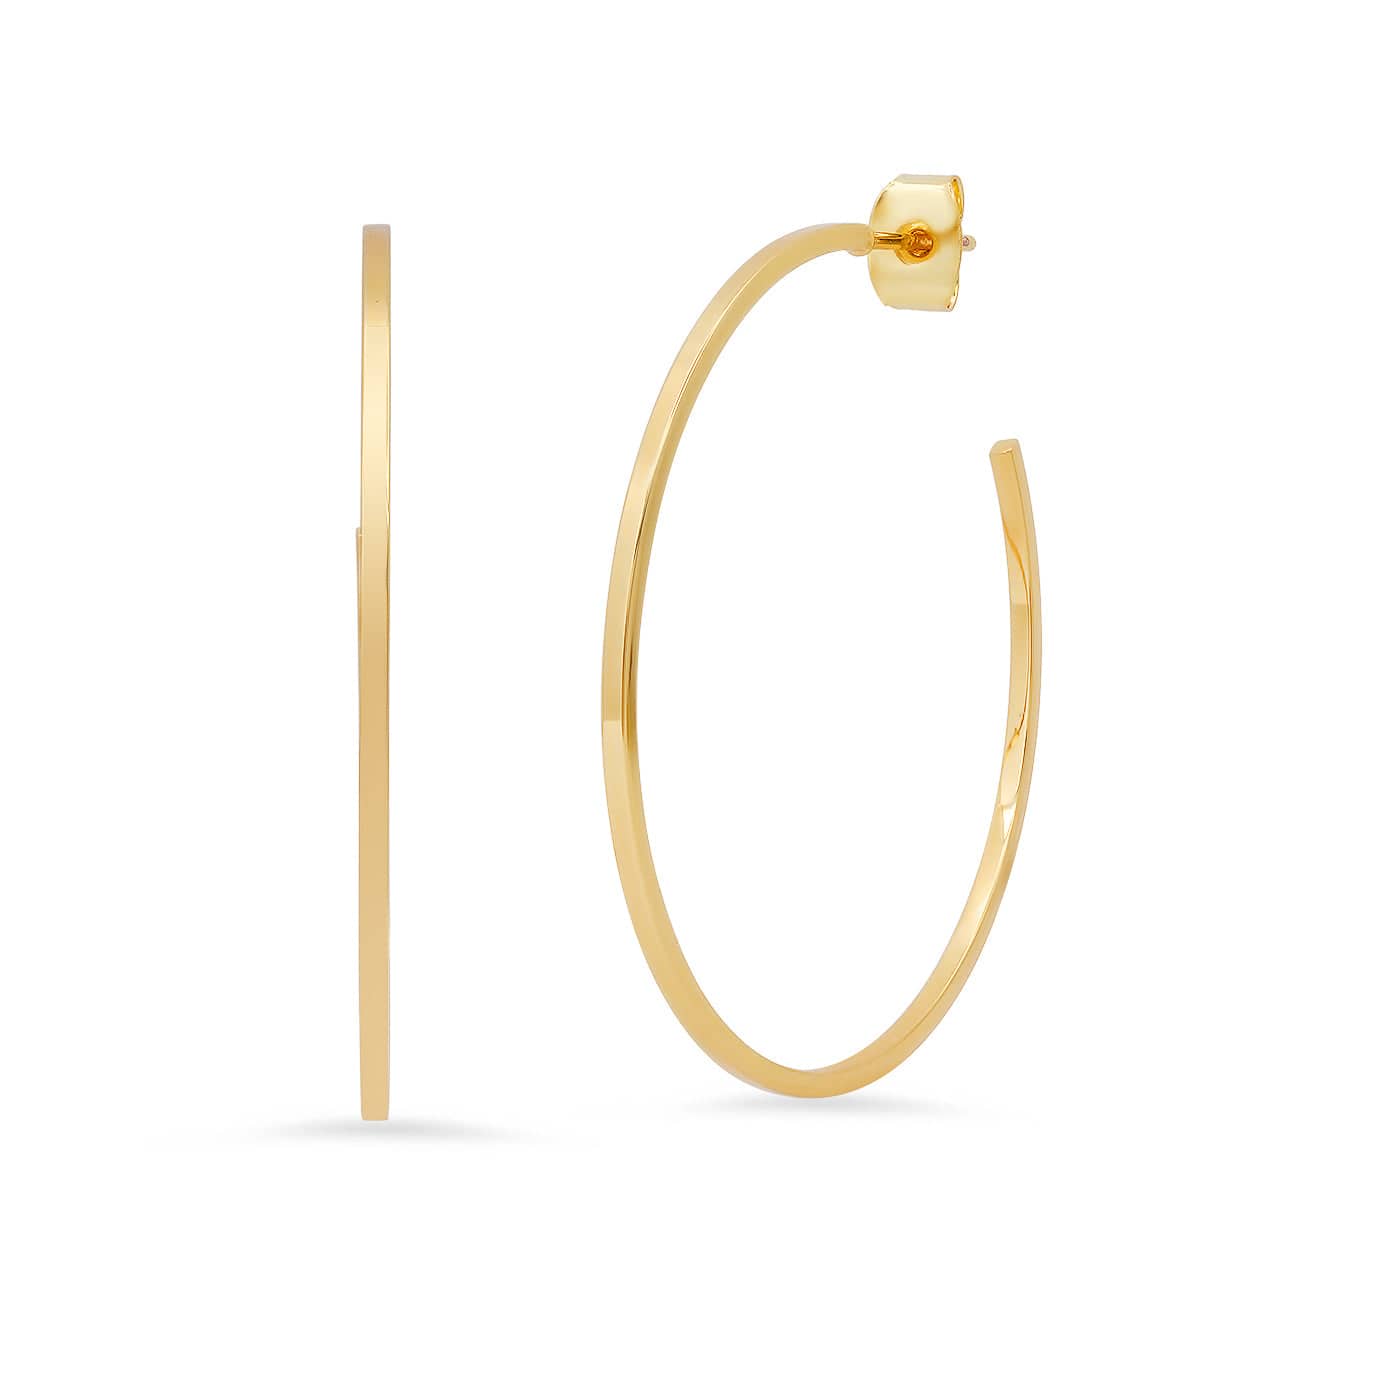 TAI JEWELRY Earrings Sleek Large Gold Hoop